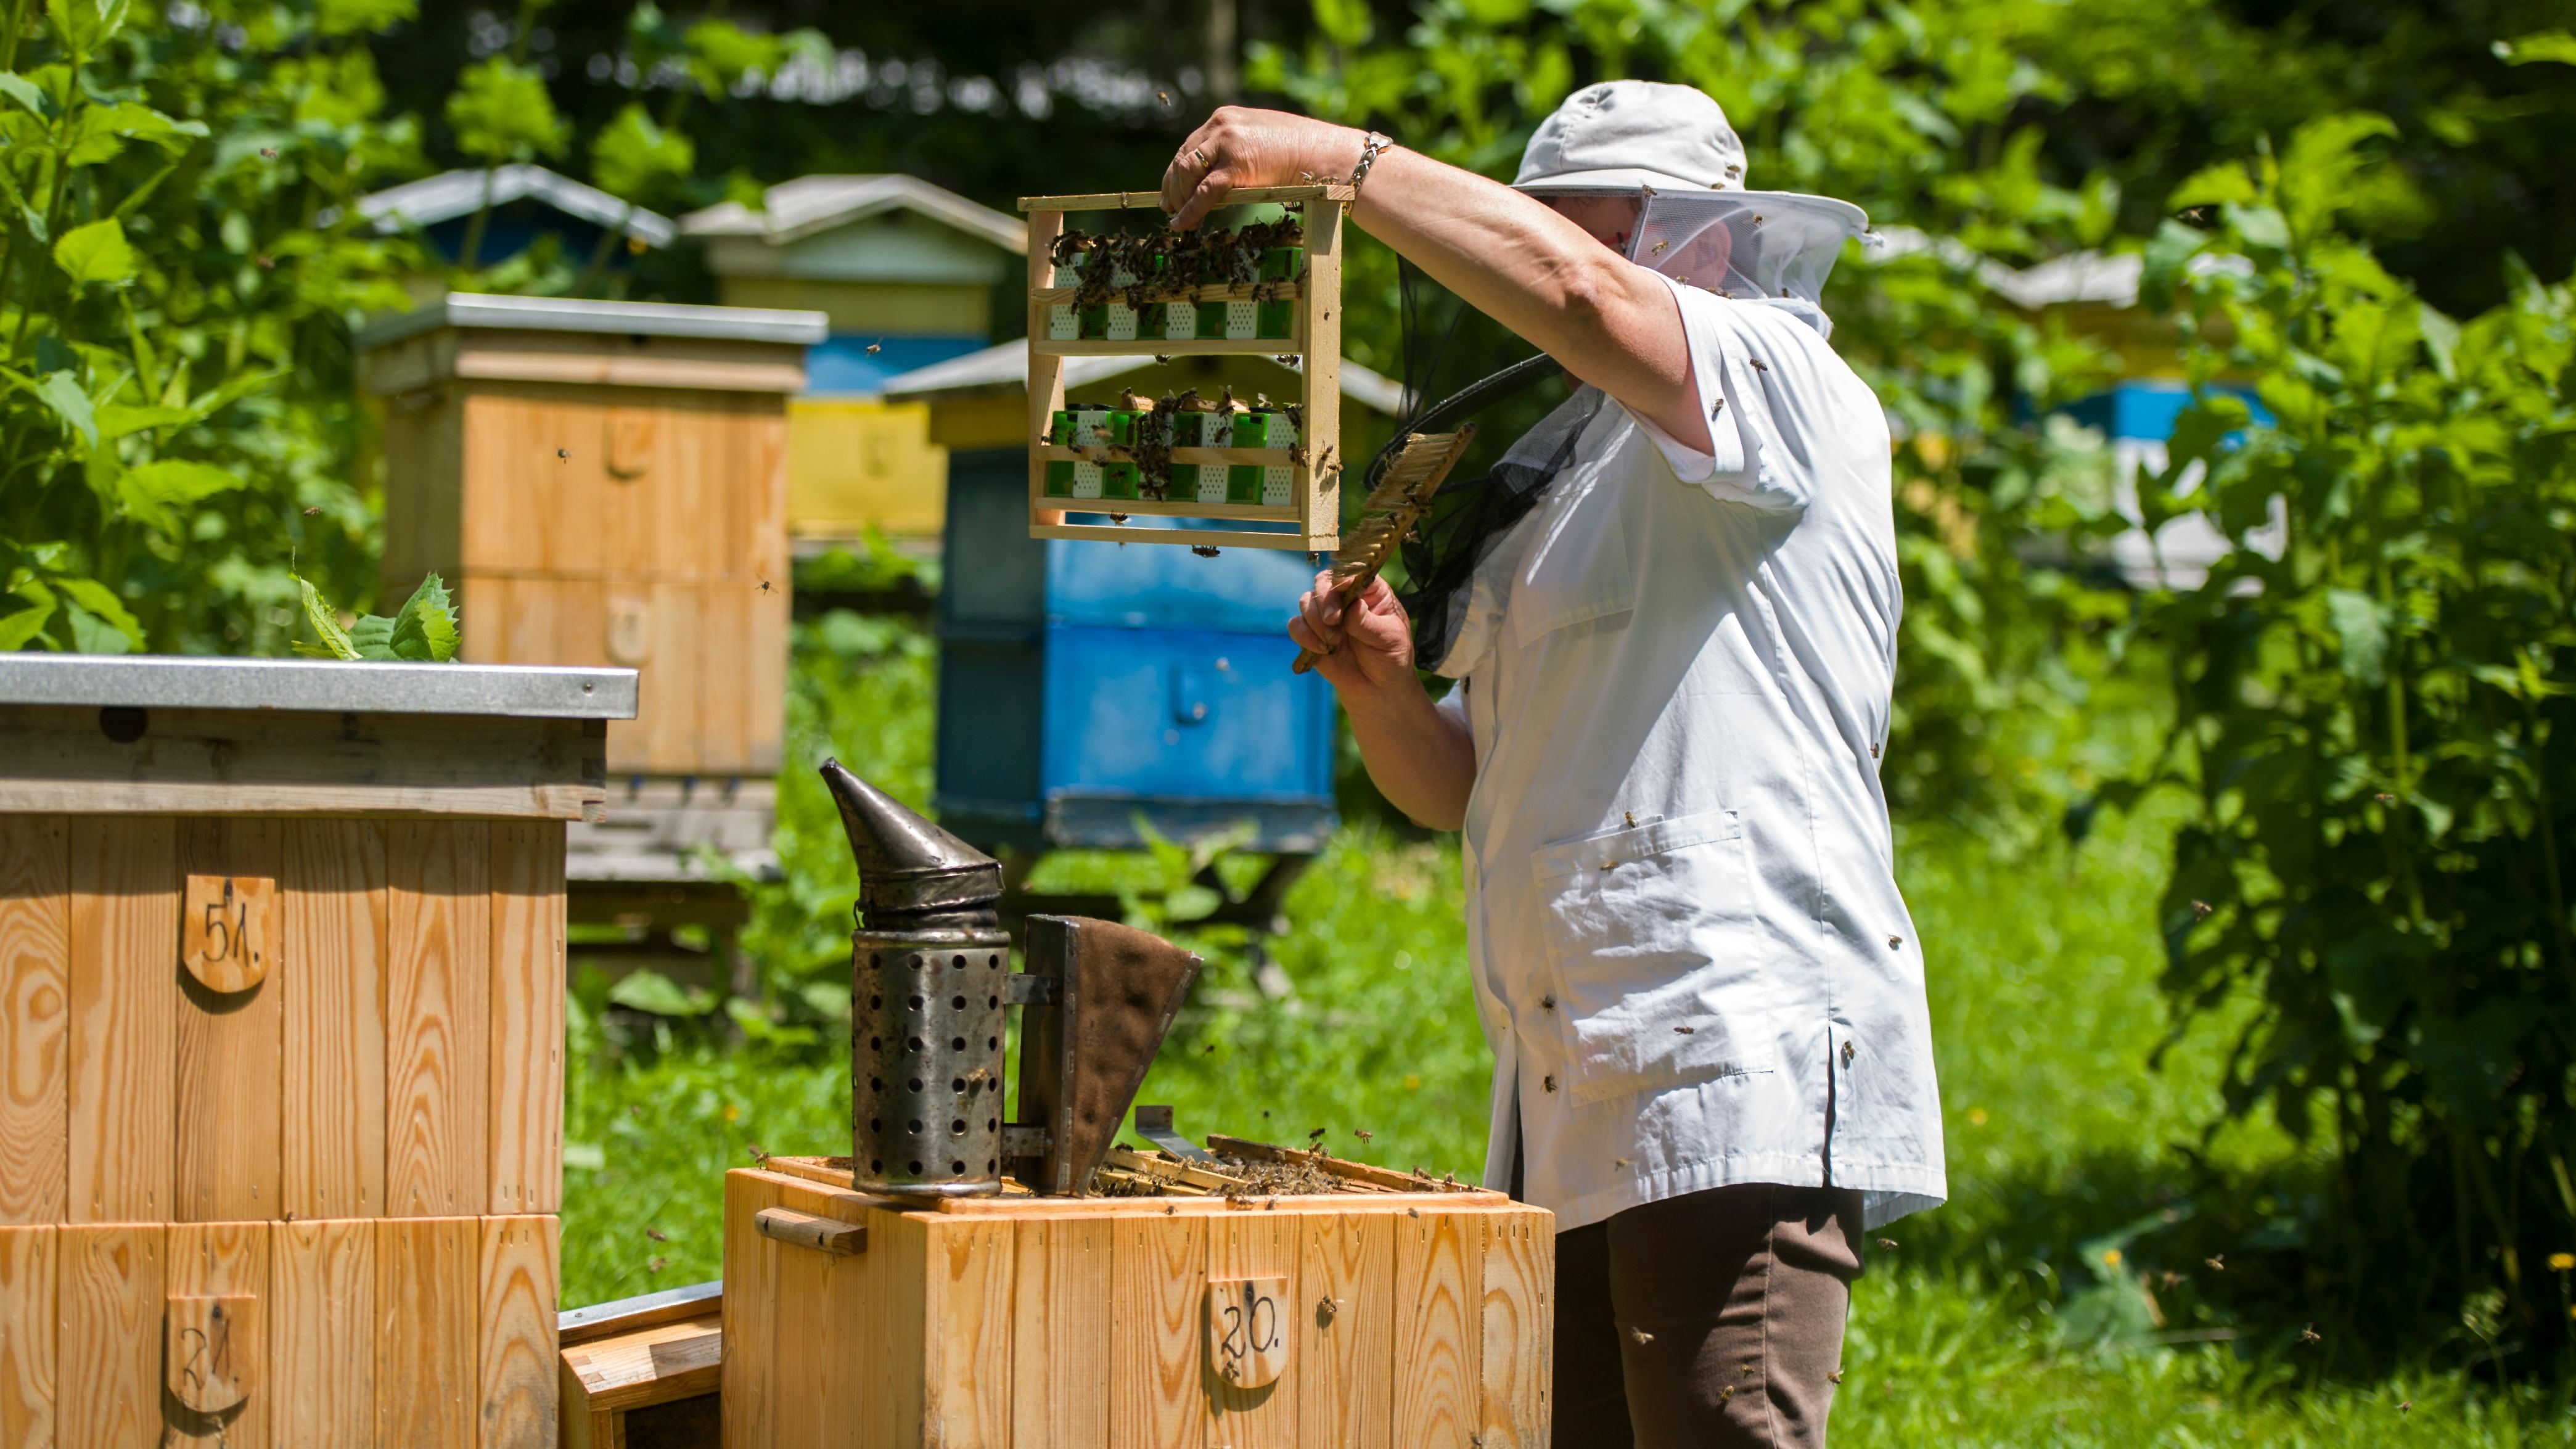 Tenue d’apiculteur et équipement d’apiculture : comment choisir     